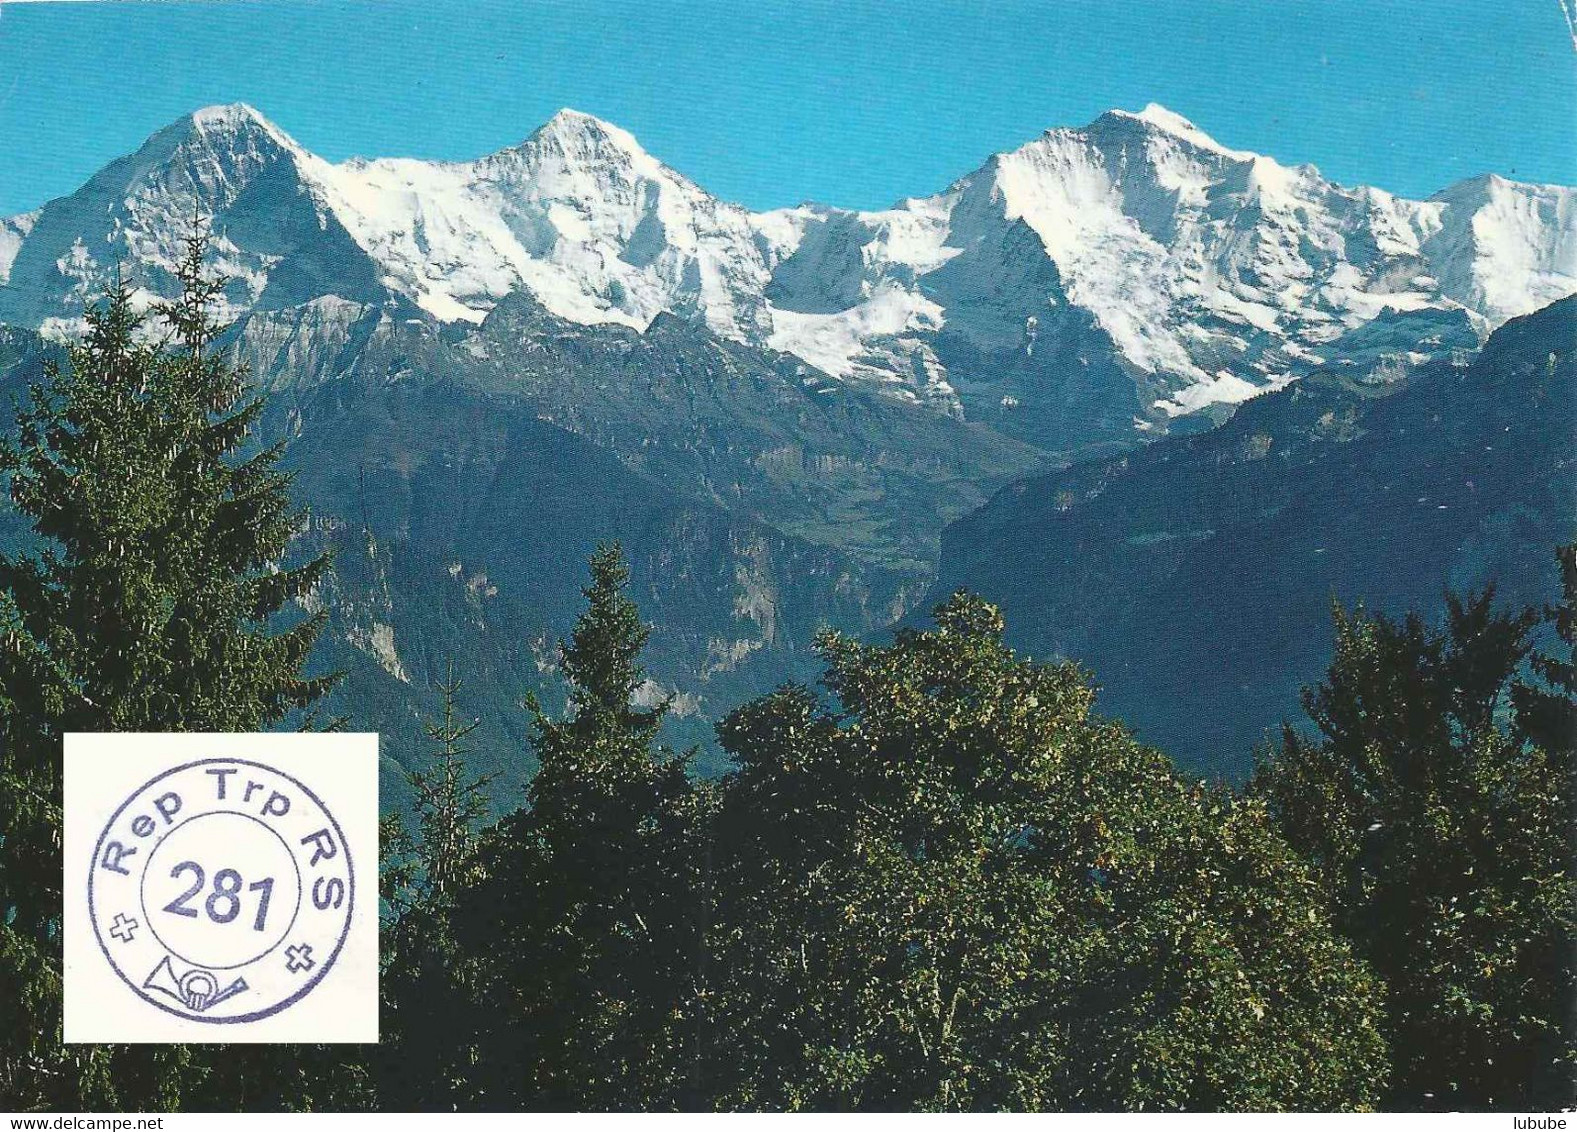 AK  "Eiger, Mönch, Jungfrau"  (Rep Trp RS 281 Feldpost)         Ca. 1980 - Poststempel